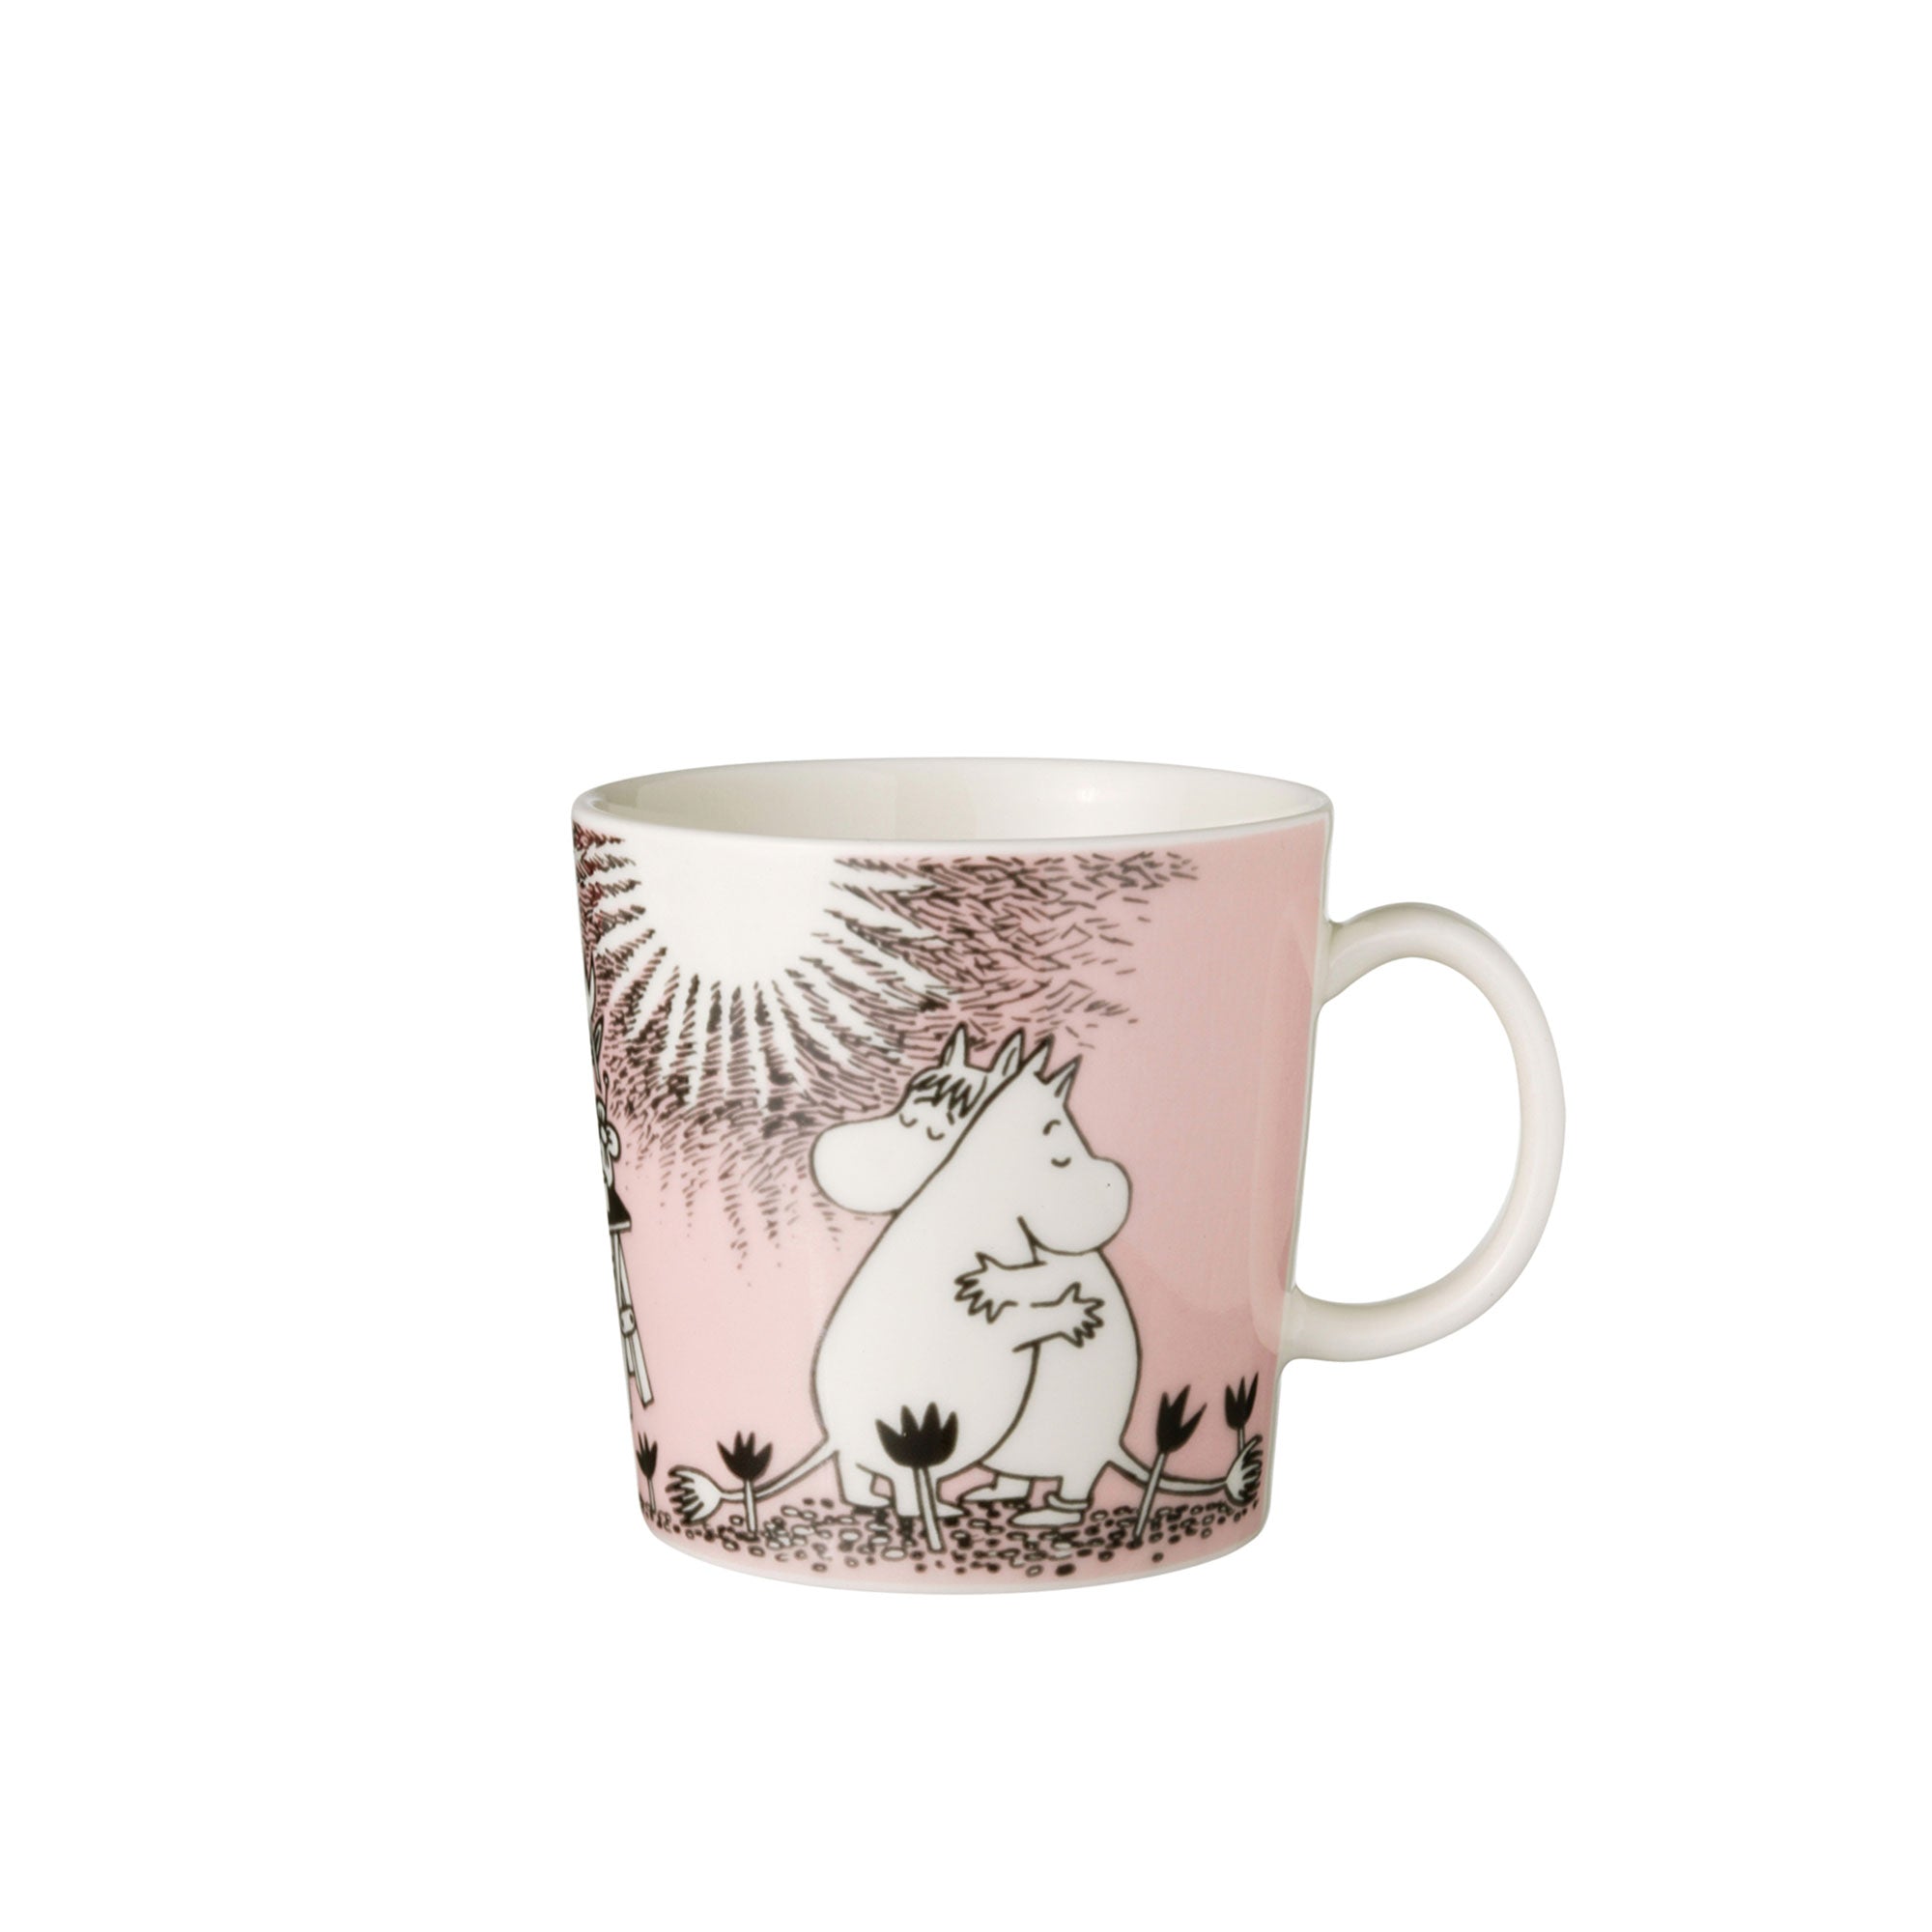 Moomin Love Mug